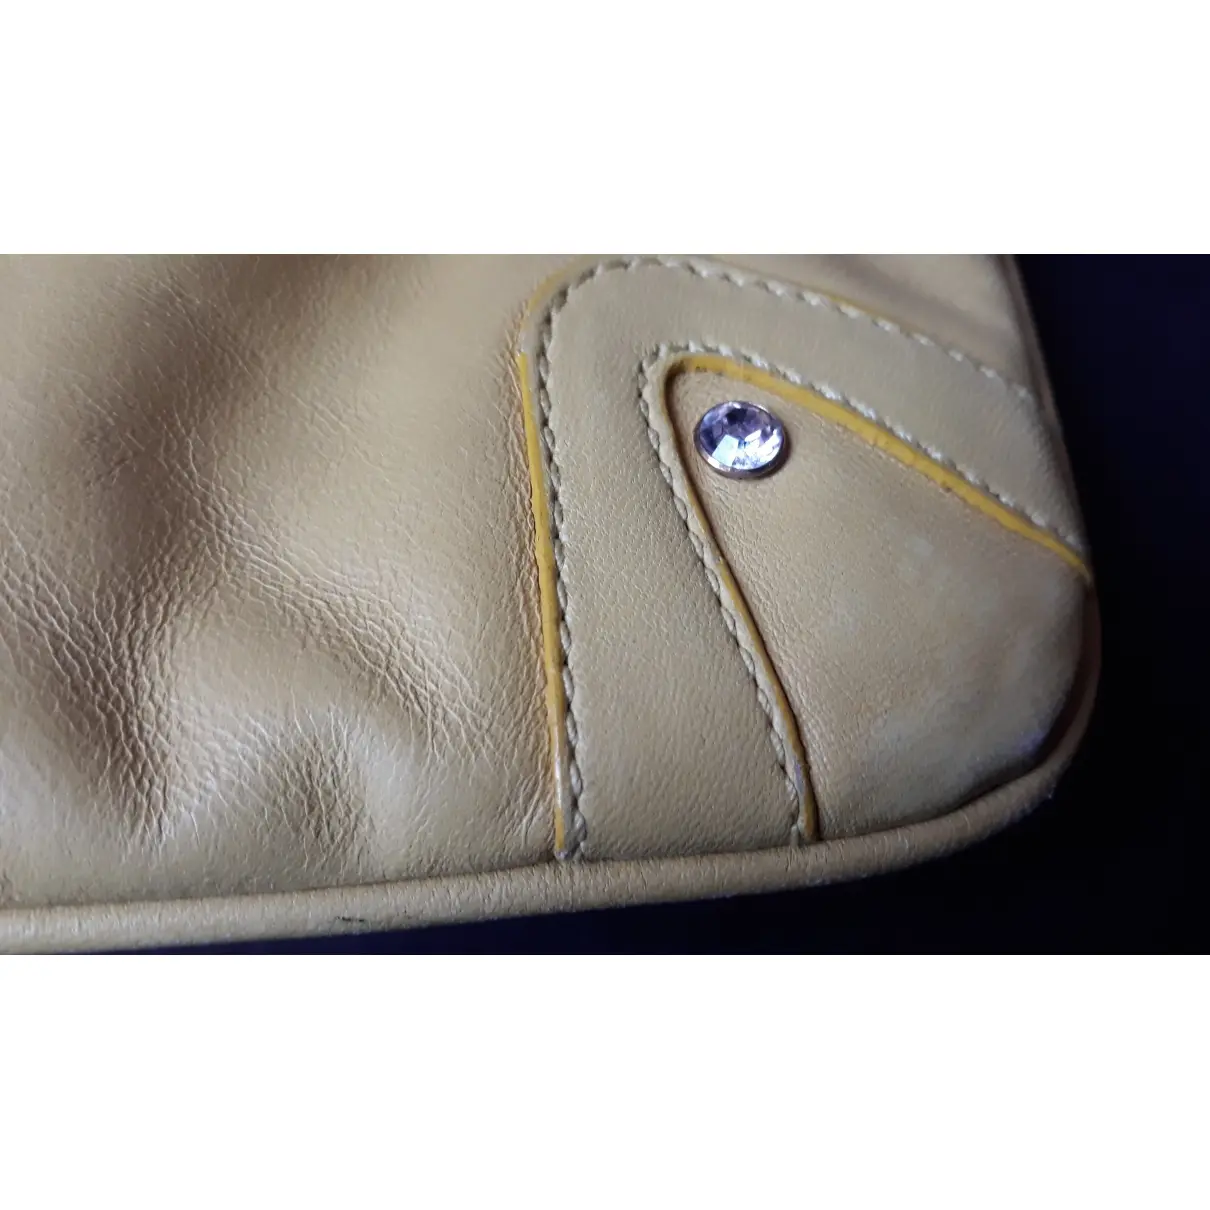 Leather handbag Dolce & Gabbana - Vintage